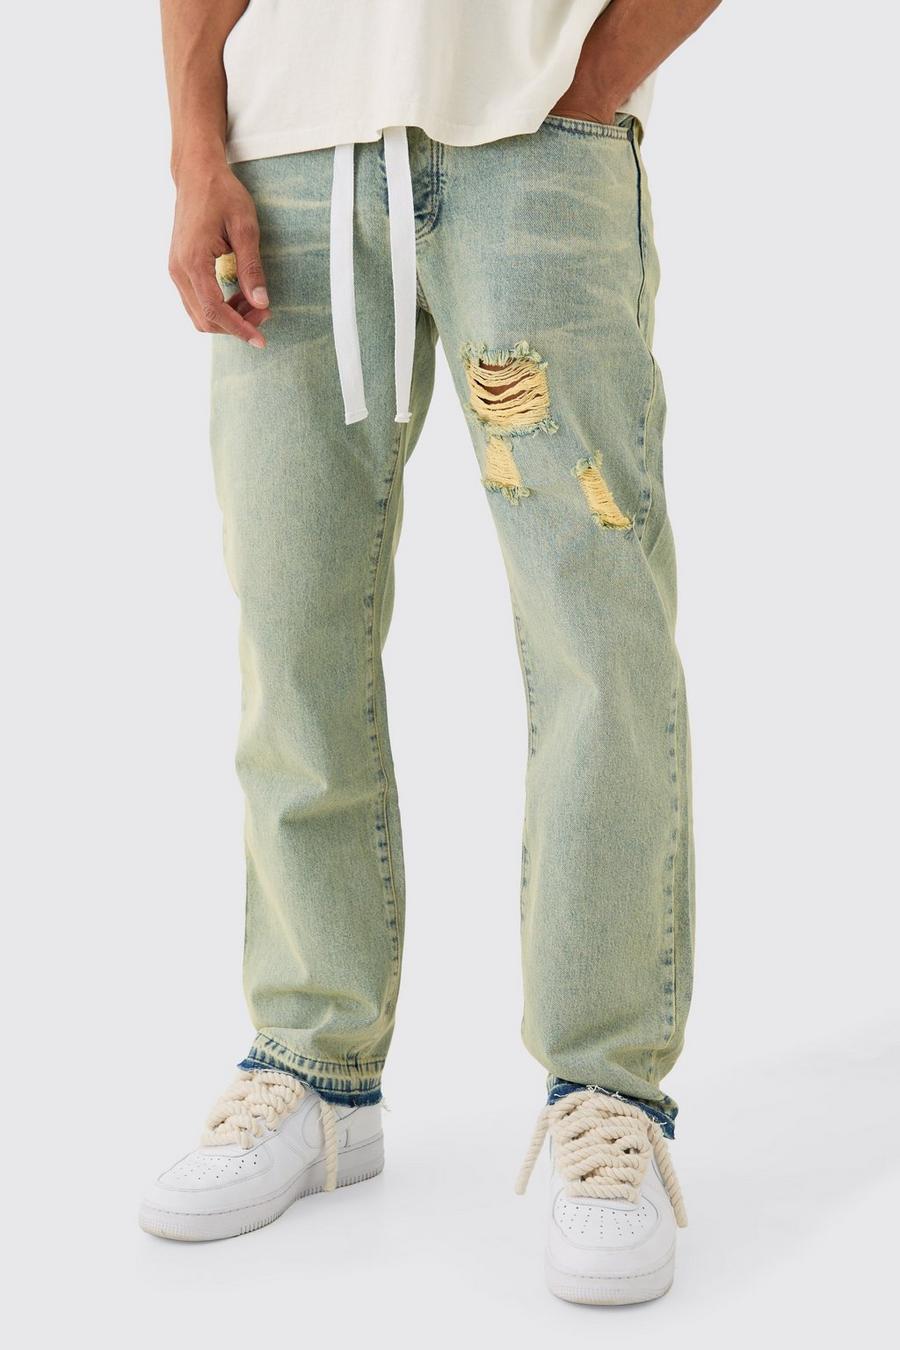 Lockere zerrissene Jeans mit Kordelzug in grüner Waschung, Green